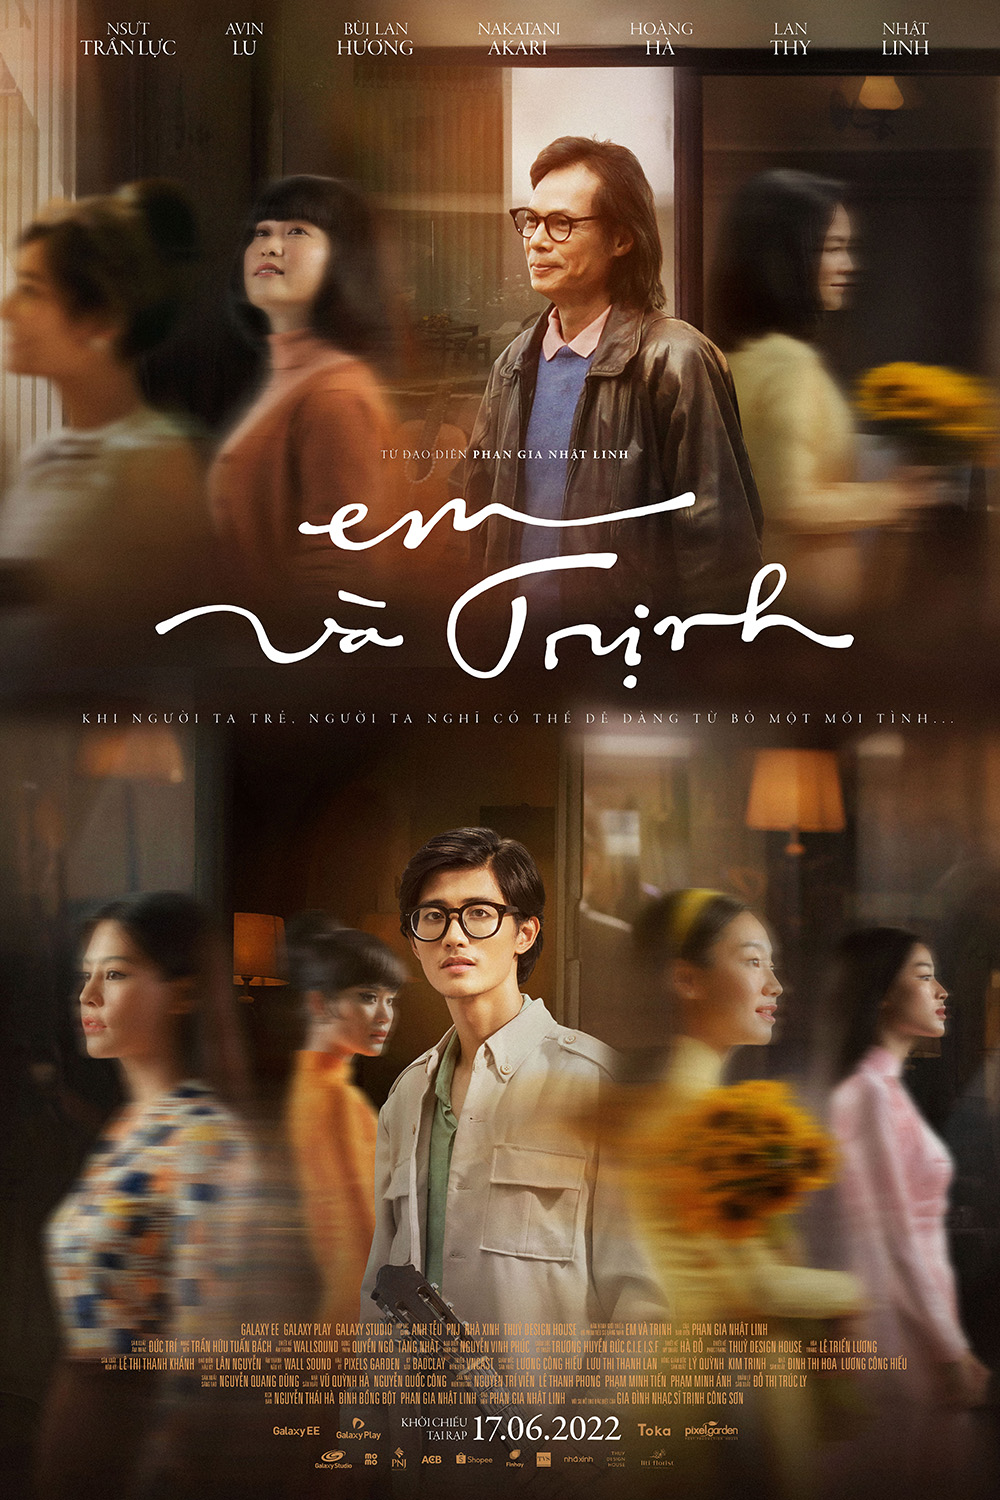 Hâm nóng tình cảm cùng với bộ phim "Em và Trịnh"